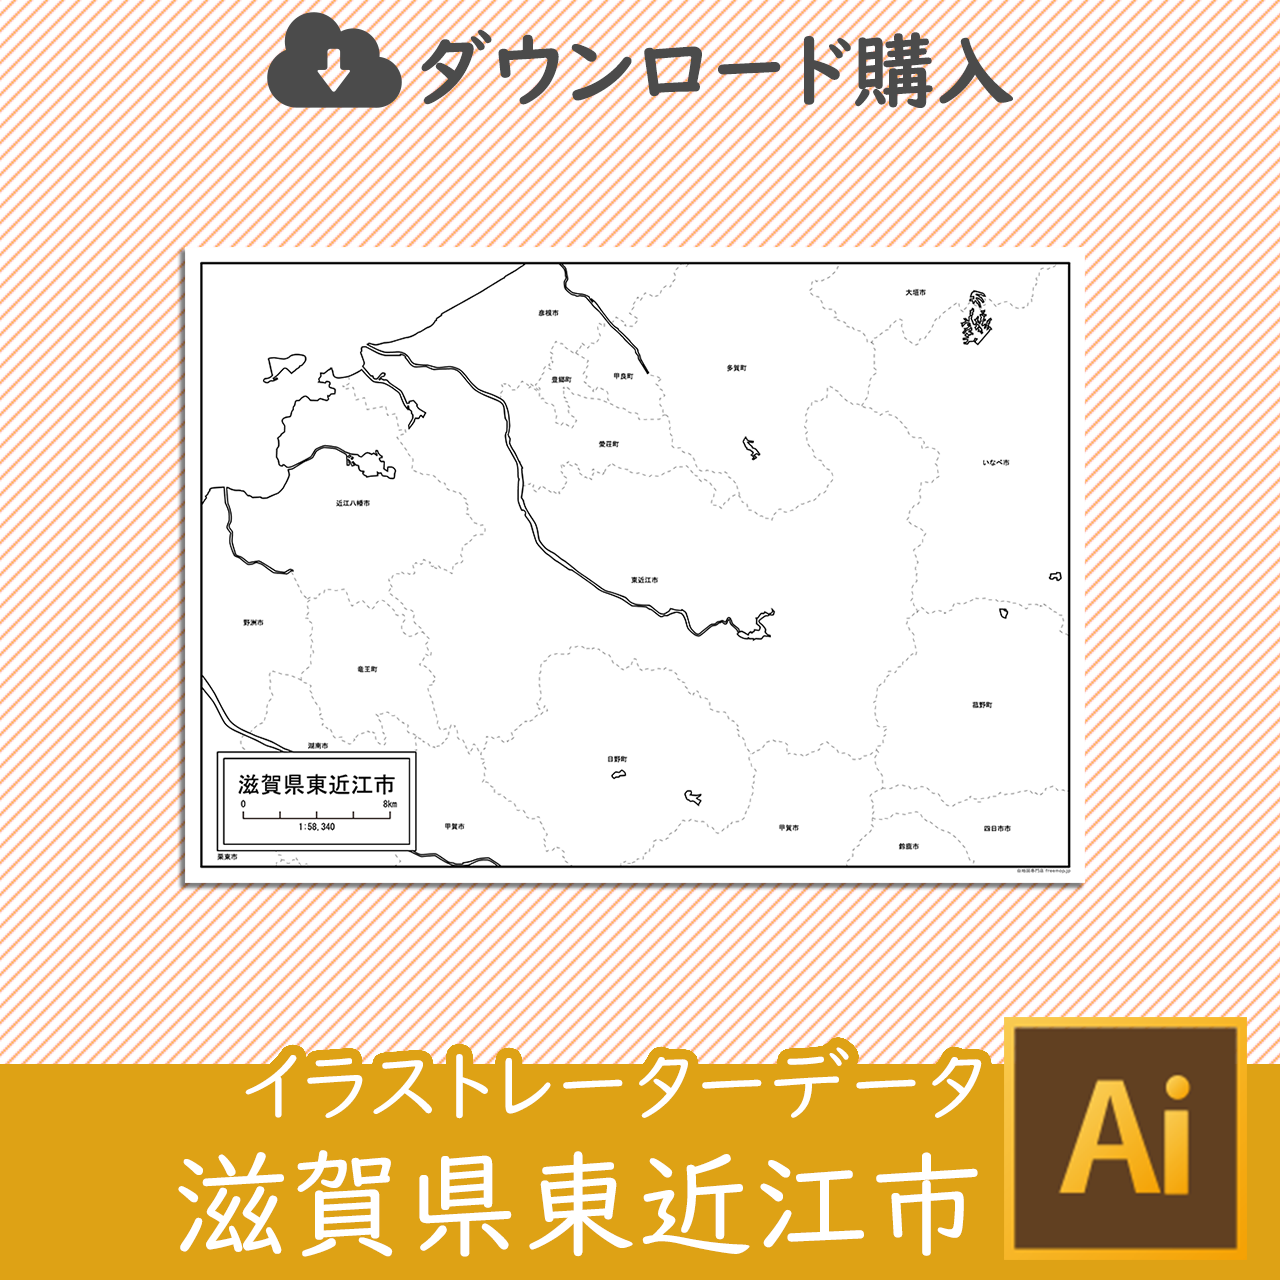 東近江市のaiデータのサムネイル画像